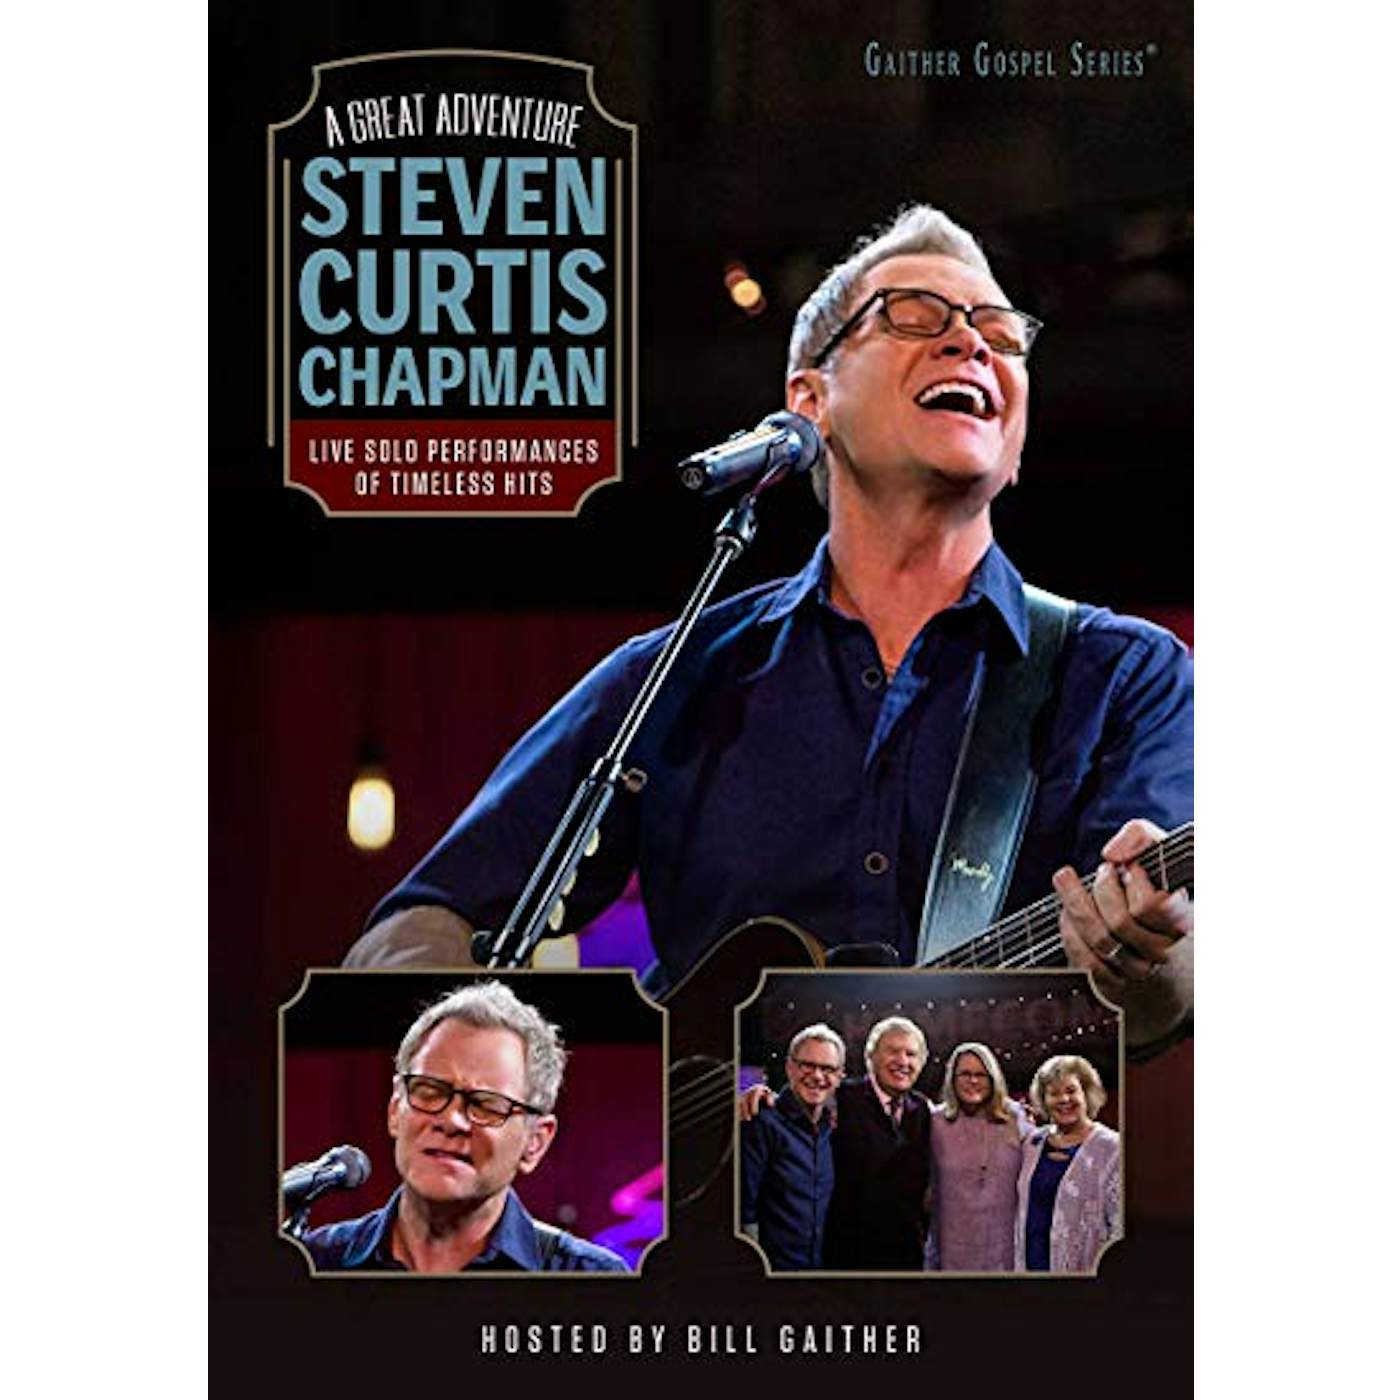 Steven Curtis Chapman GREAT ADVENTURE DVD